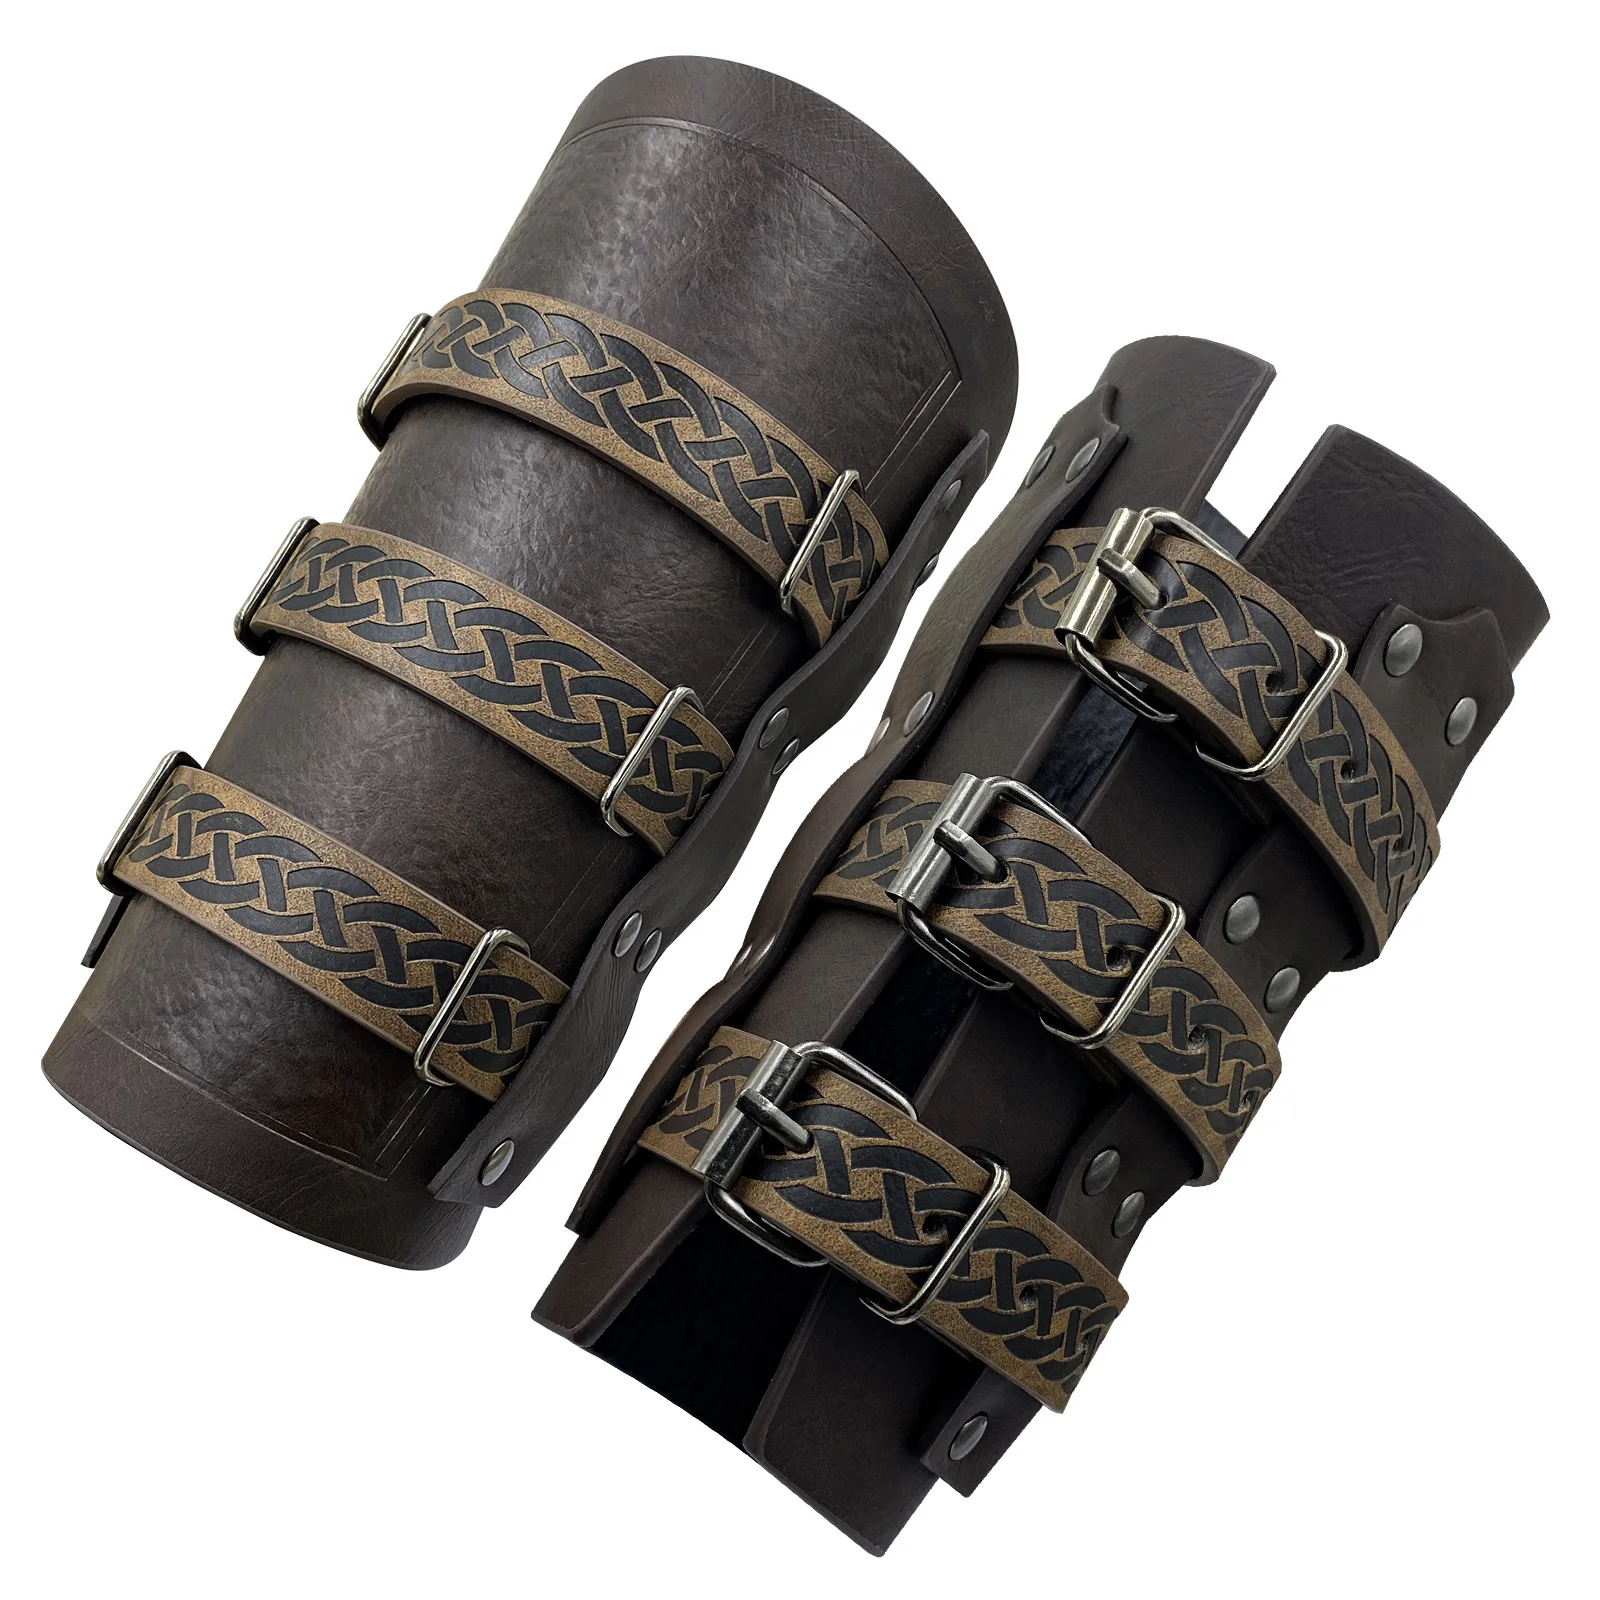 

Перчатки Самурайские в стиле стимпанк, средневековые кожаные мужские перчатки-брони в стиле самурая, мужские перчатки в средневековом стиле, реквизит для косплея